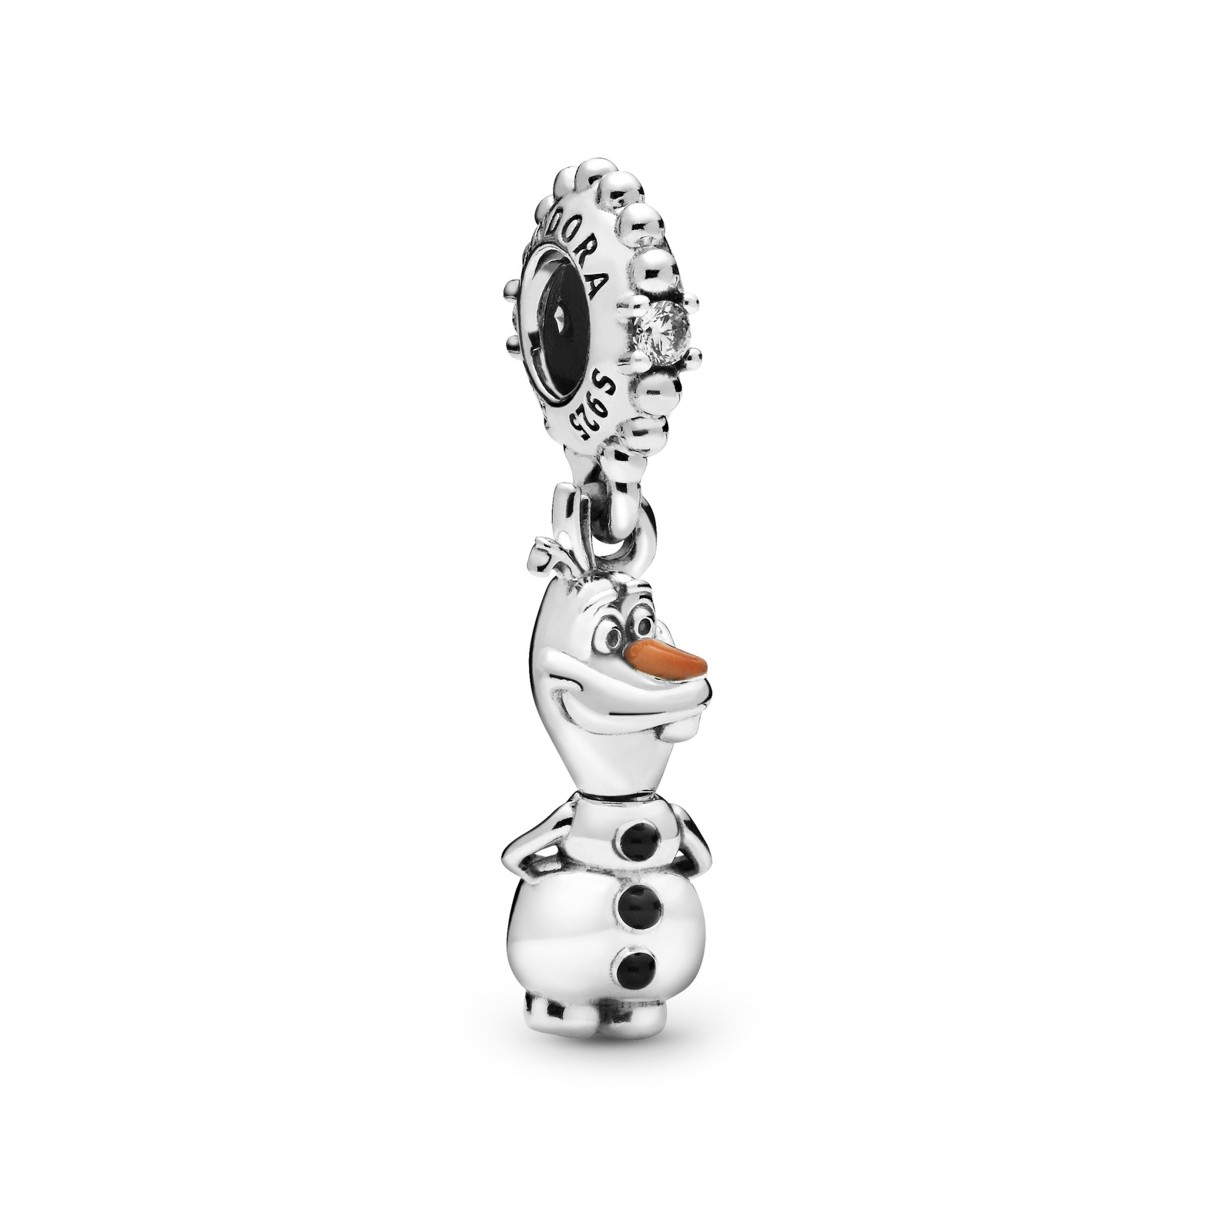 Olaf Charm by Pandora Jewelry – Frozen 2